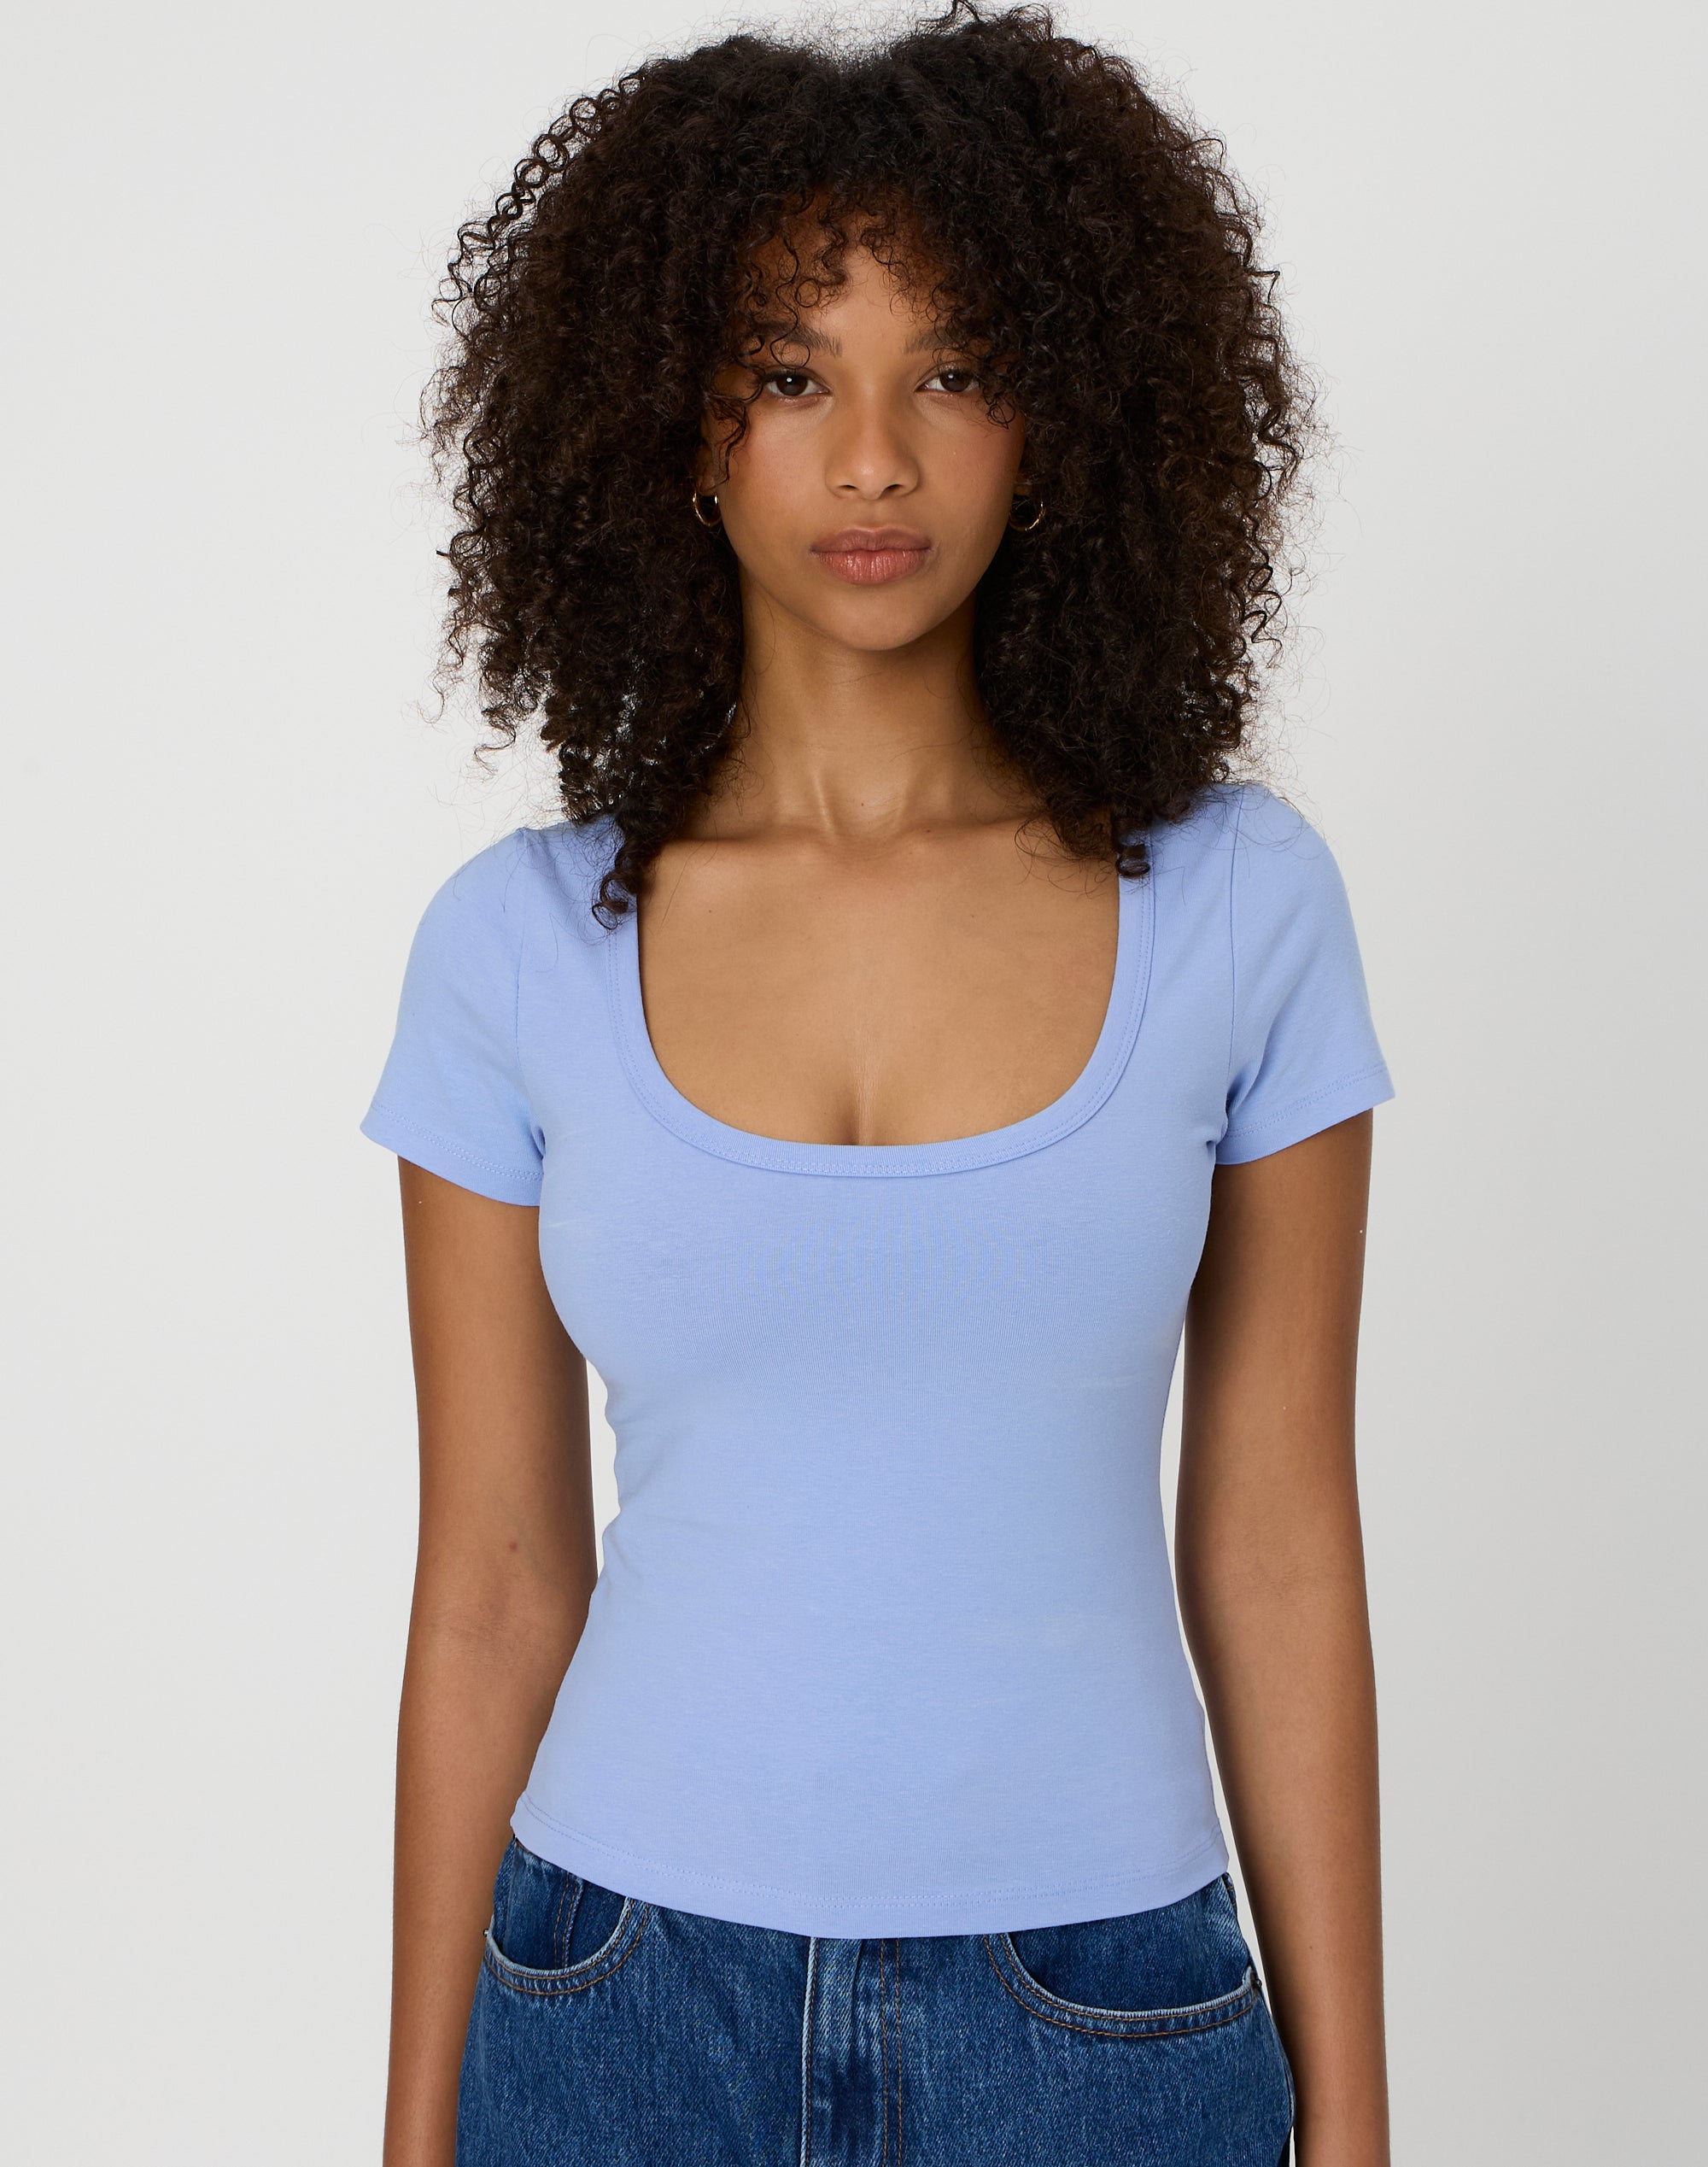 Ribbed Scoop-neck T-shirt - Light blue melange - Ladies